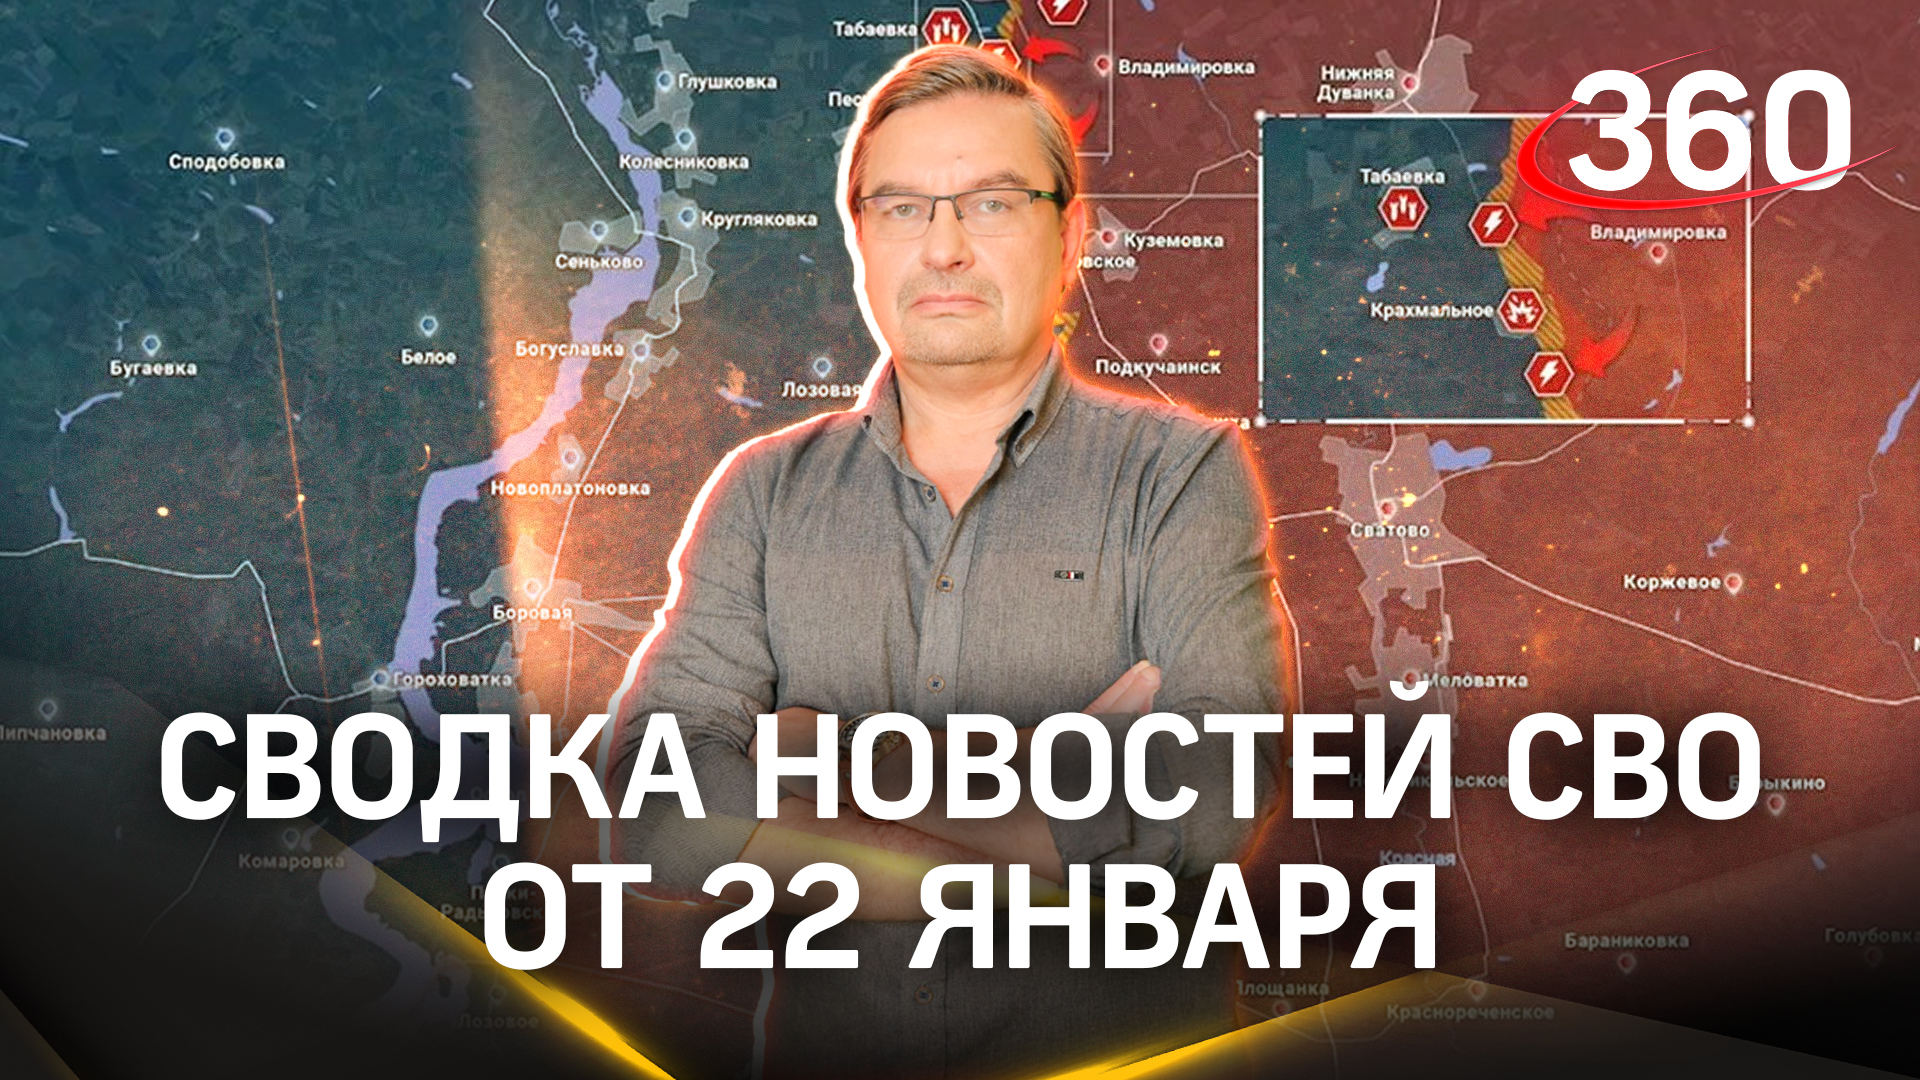 Михаил Онуфриенко: «Противник пятится по всему фронту». Последняя сводка новостей СВО от 22 января